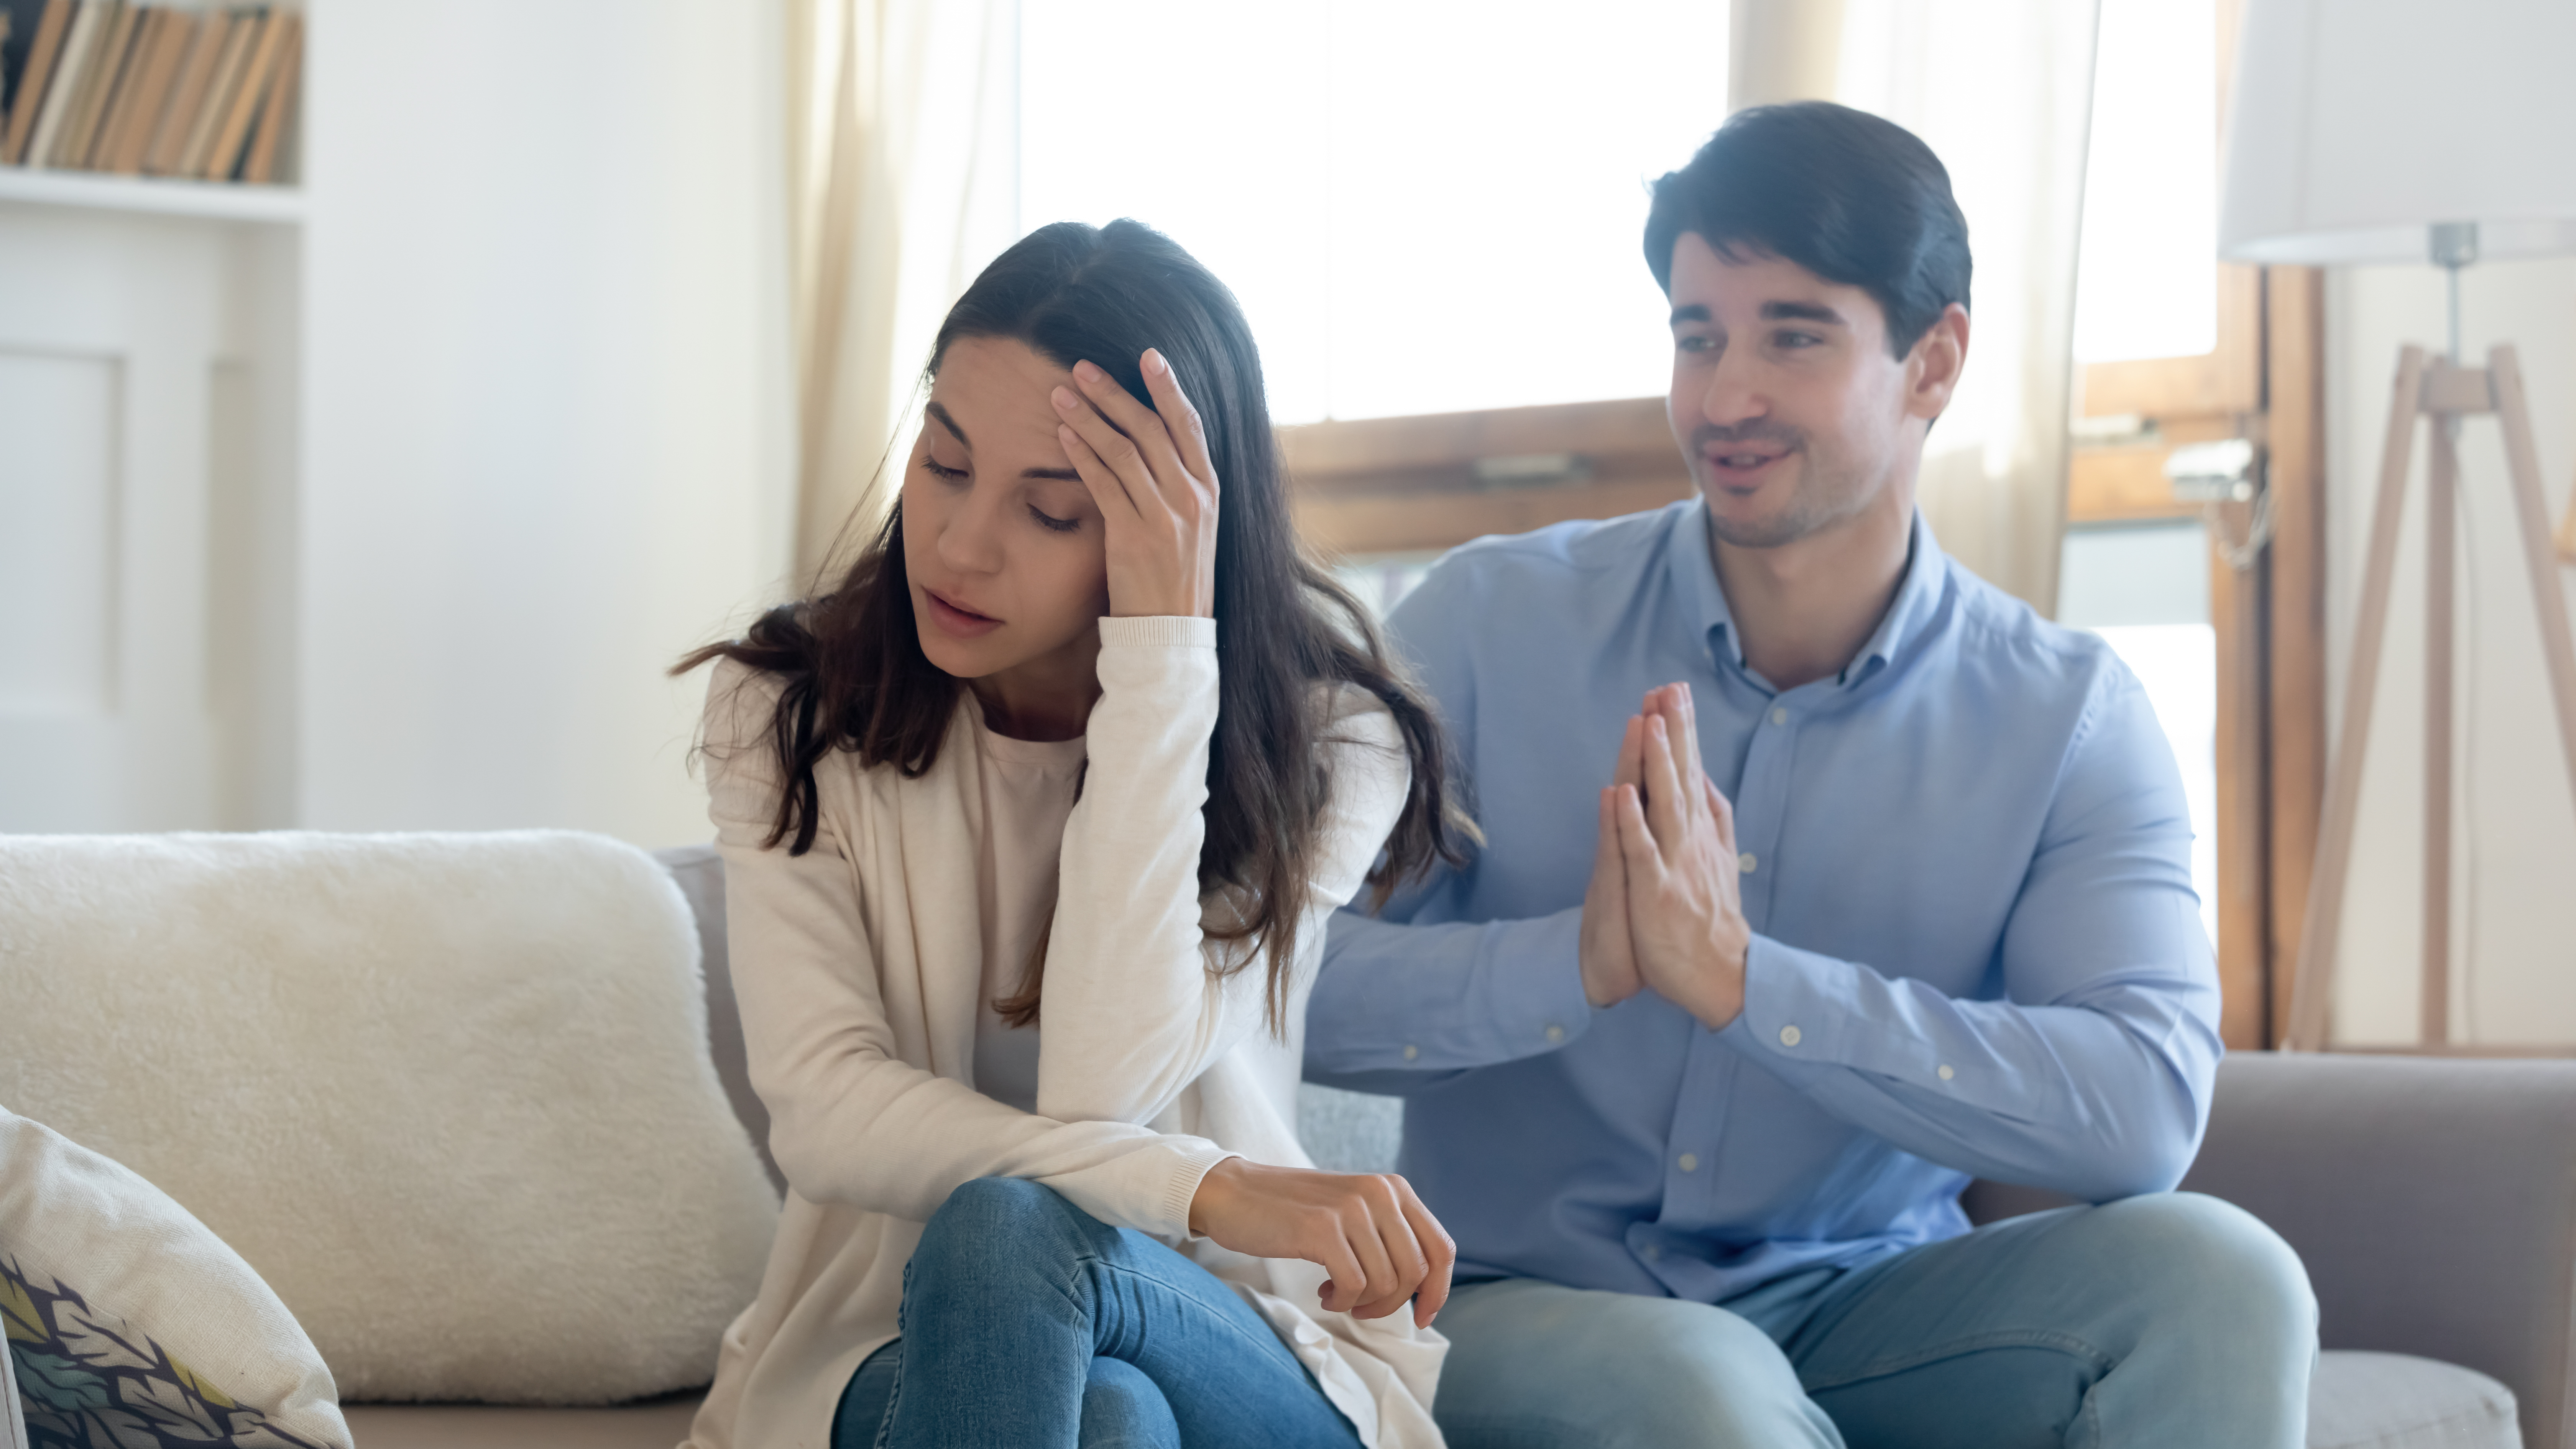 Ein Mann entschuldigt sich bei seiner Freundin | Quelle: Shutterstock